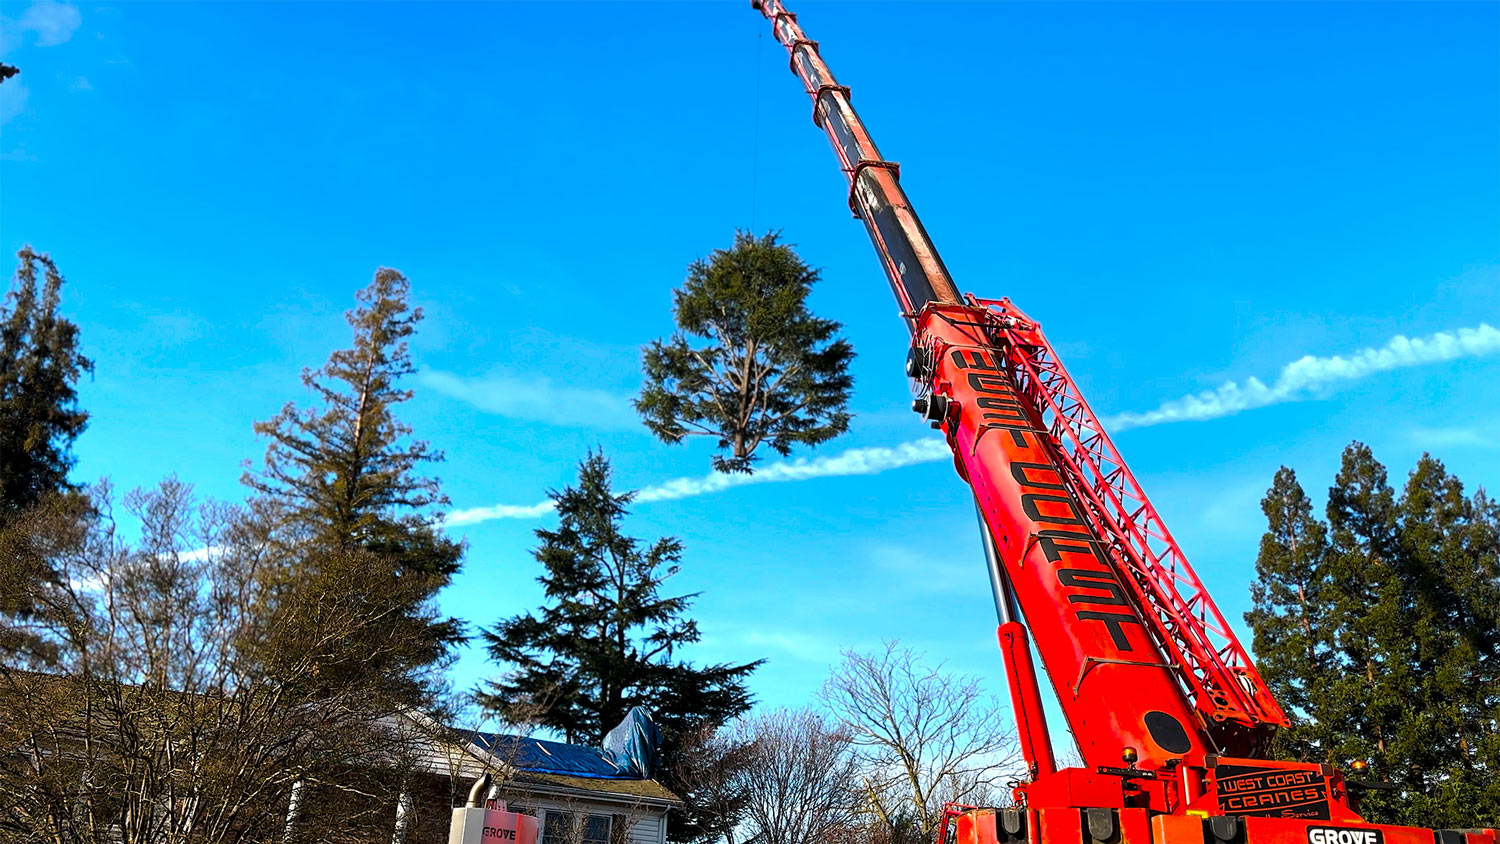 West Coast Crane hoists treetop